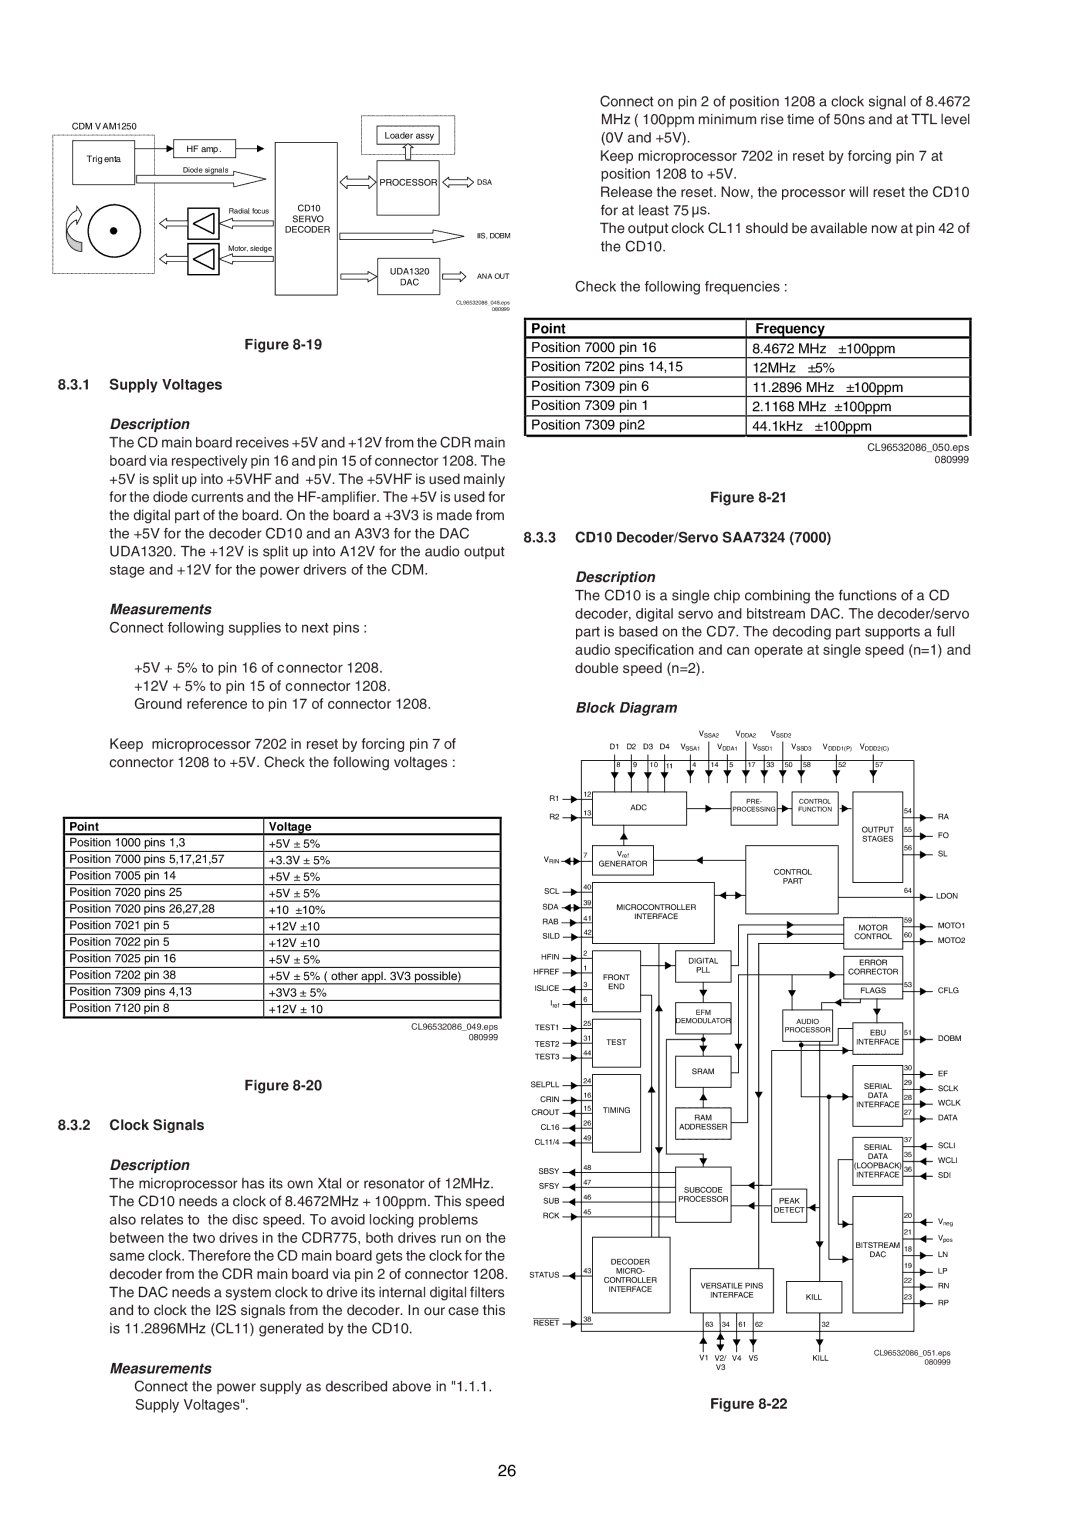 Marantz DR-6000, MAR770, MAR775 service manual Description, Measurements, Block Diagram 